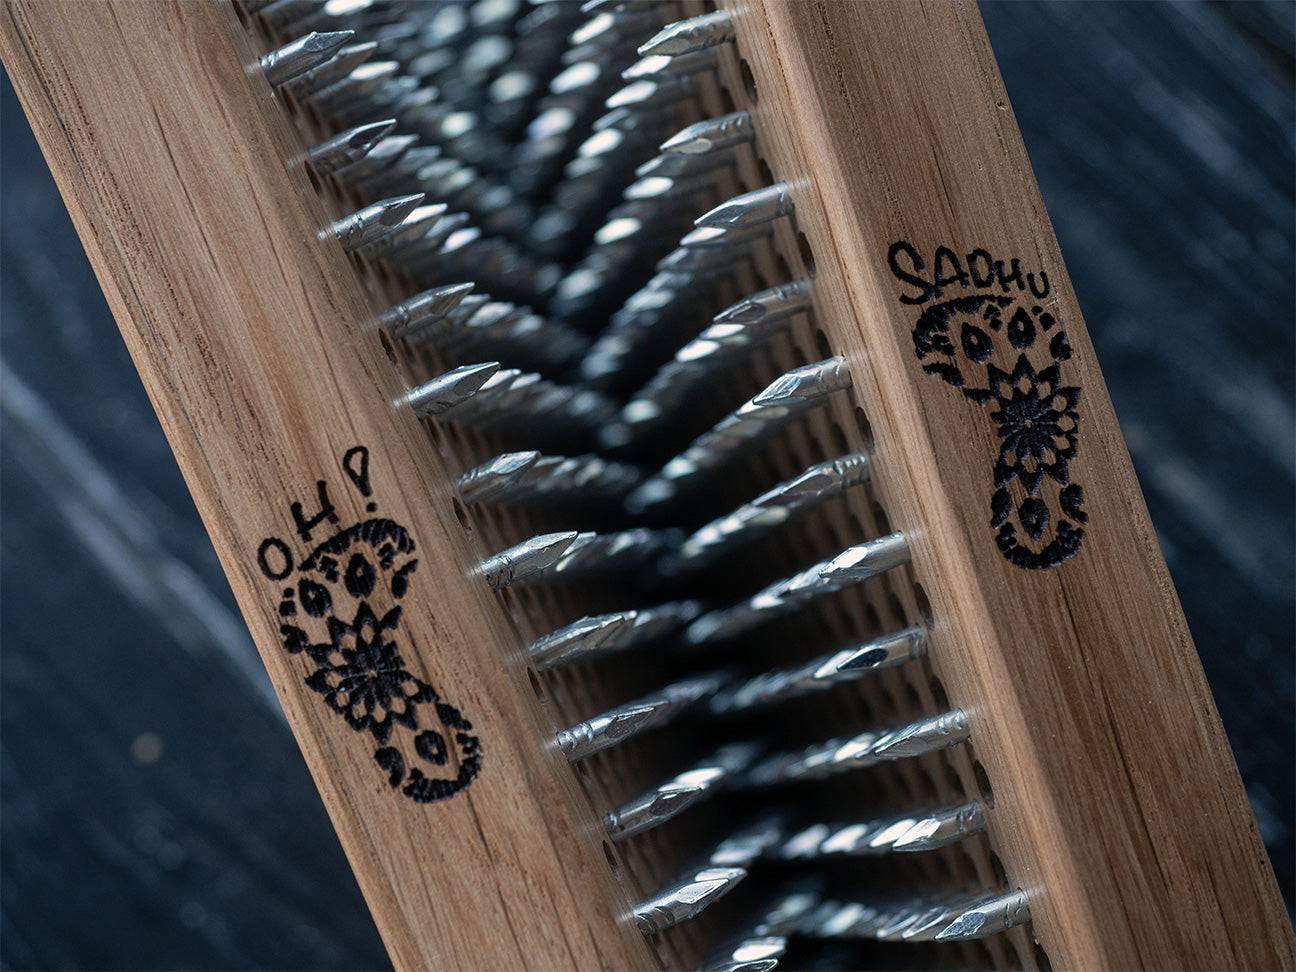 oak wood sadhu board with nails